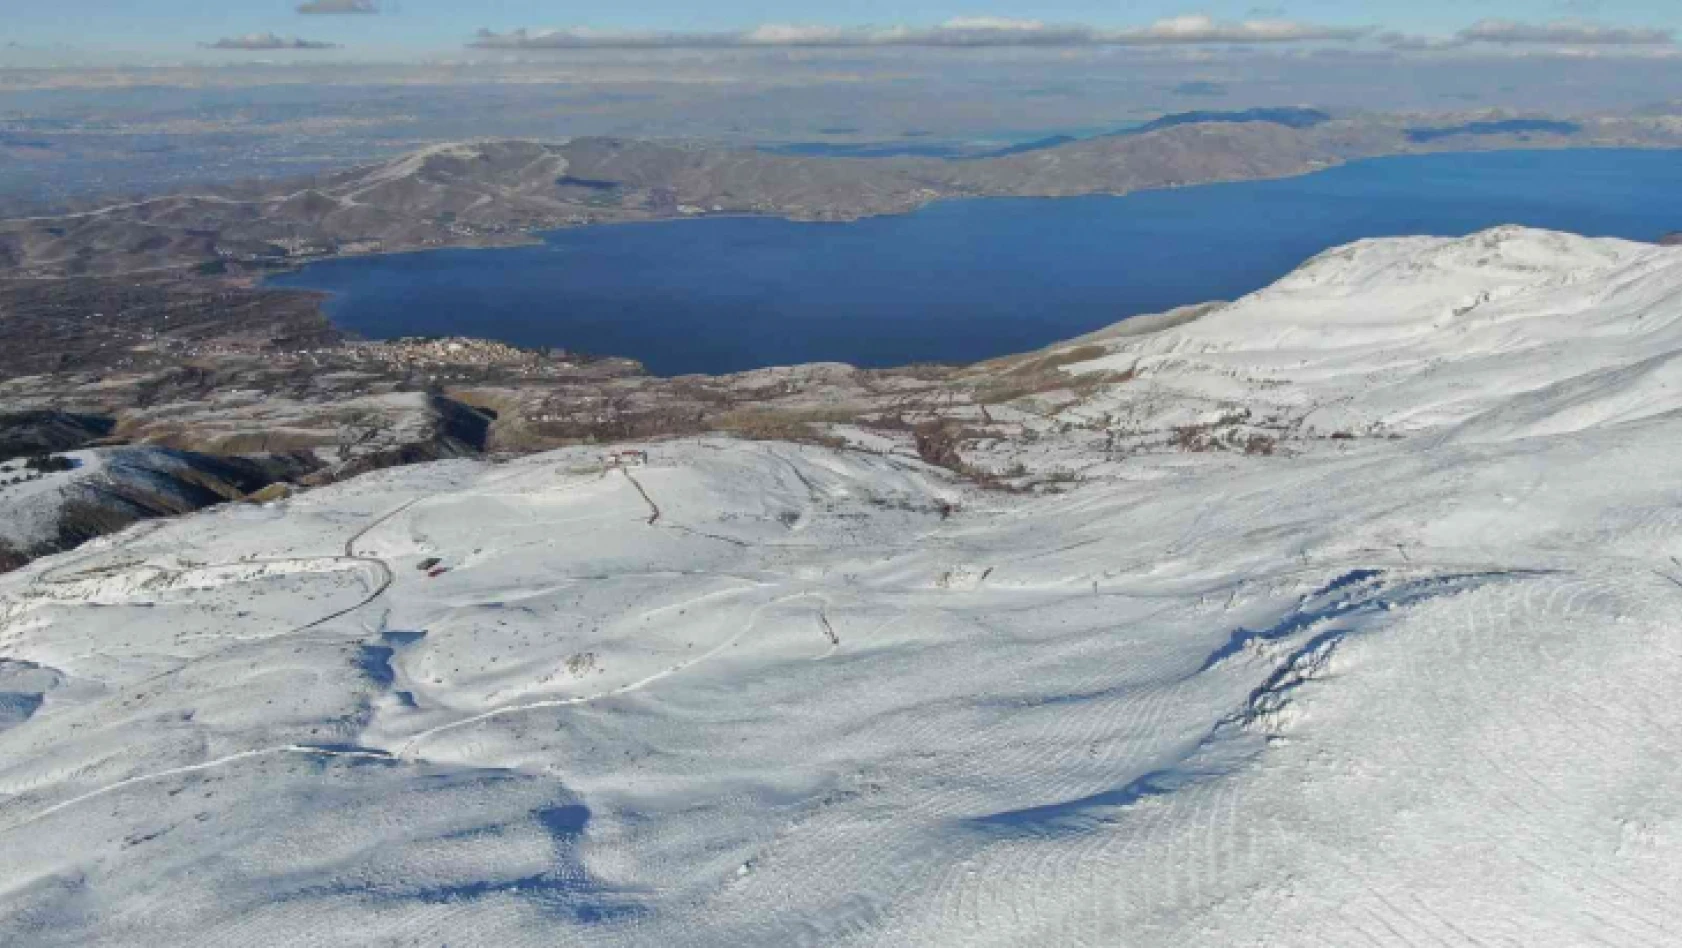 Göl manzaralı kayak merkezi sezona hazırlanıyor